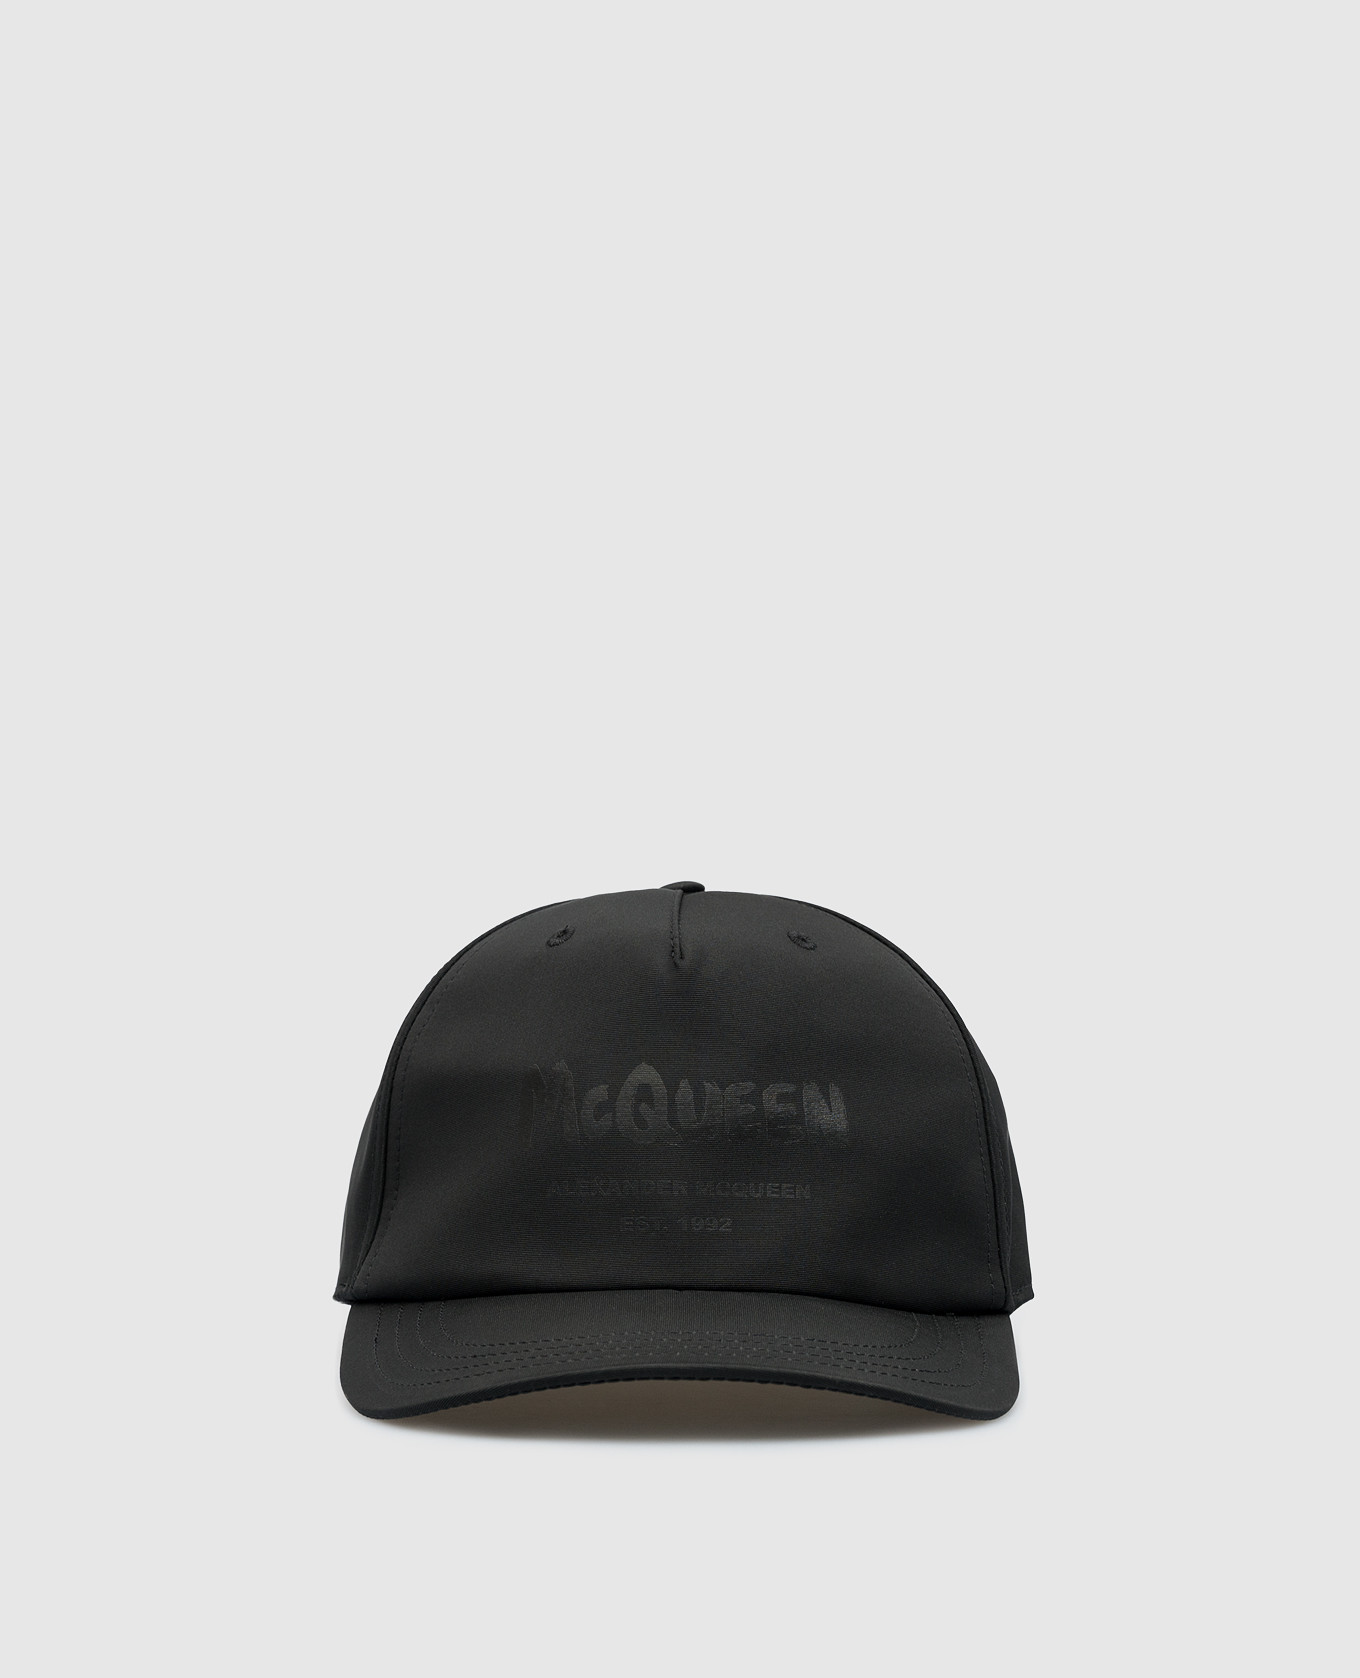 Gorra negra con logo.